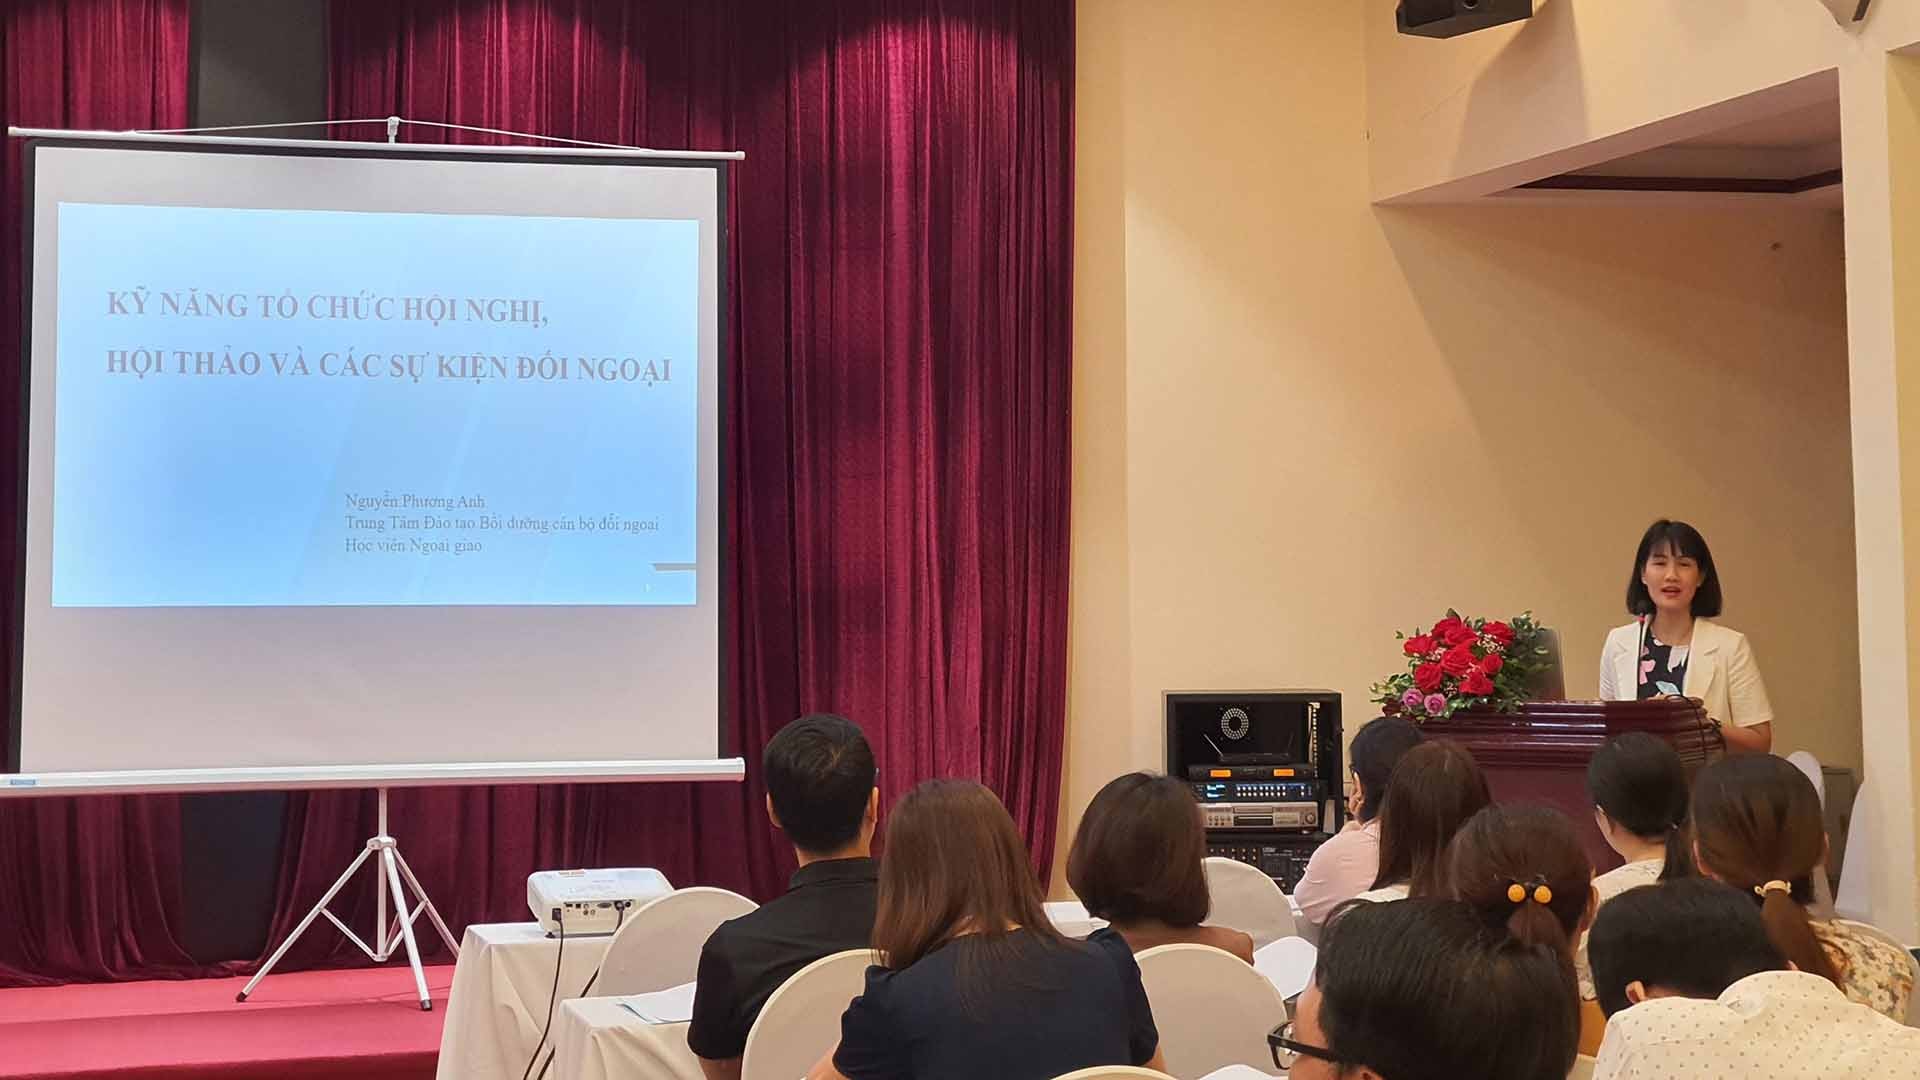 ThS. Nguyễn Phương Anh, Phó Giám đốc Trung tâm FOSET, Học viện Ngoại giao giảng bài tại khóa bồi dưỡng.